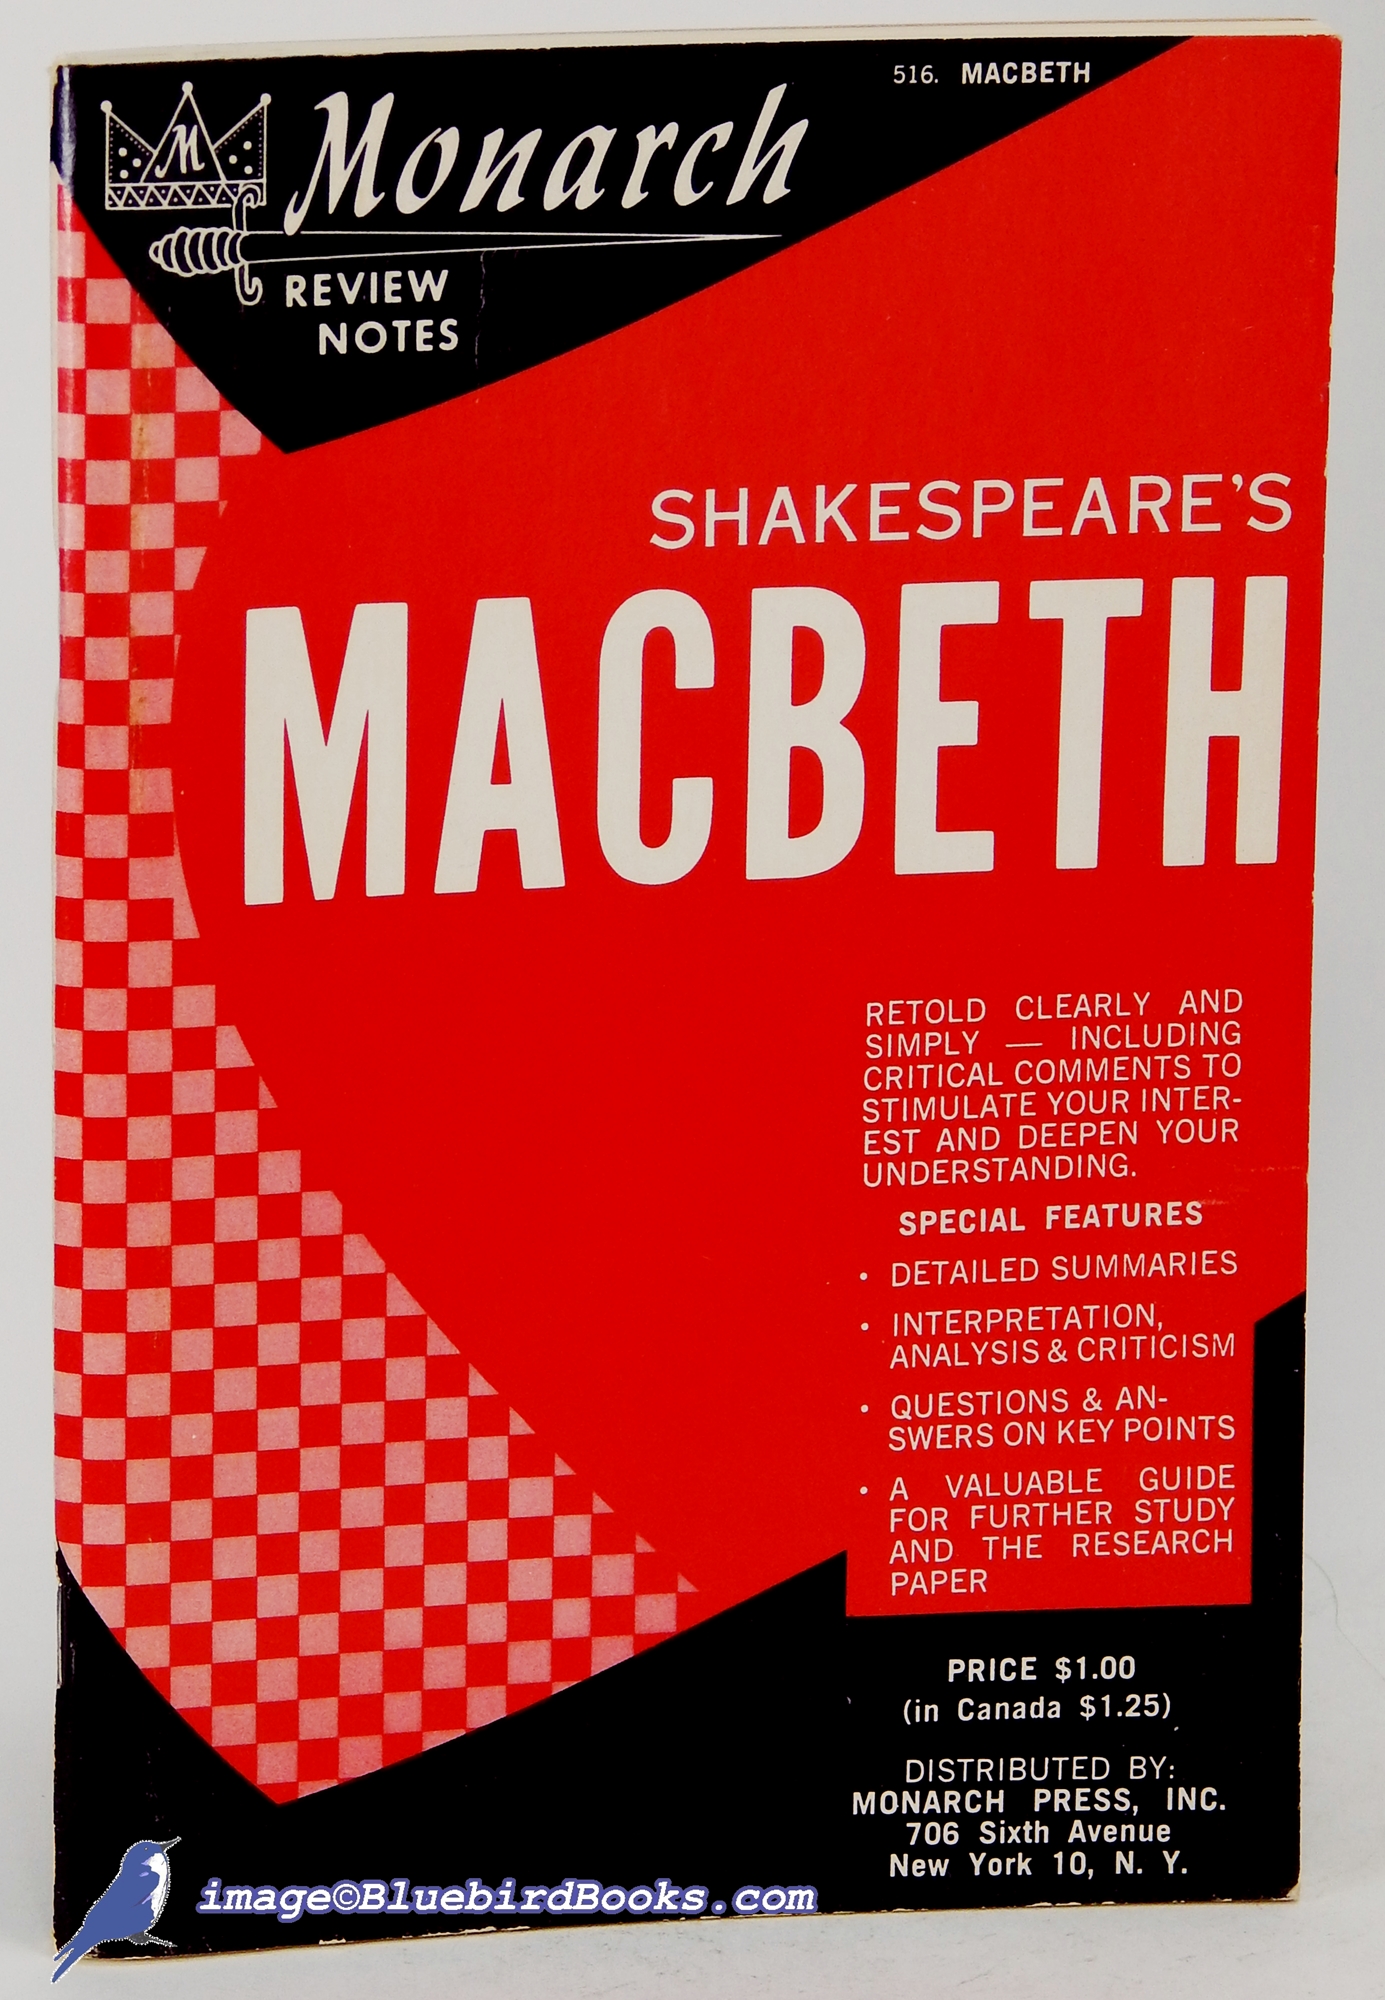 GEWIRTZ, ARTHUR - Monarch Review Notes on Shakespeare's Macbeth (Monarch Review Notes)